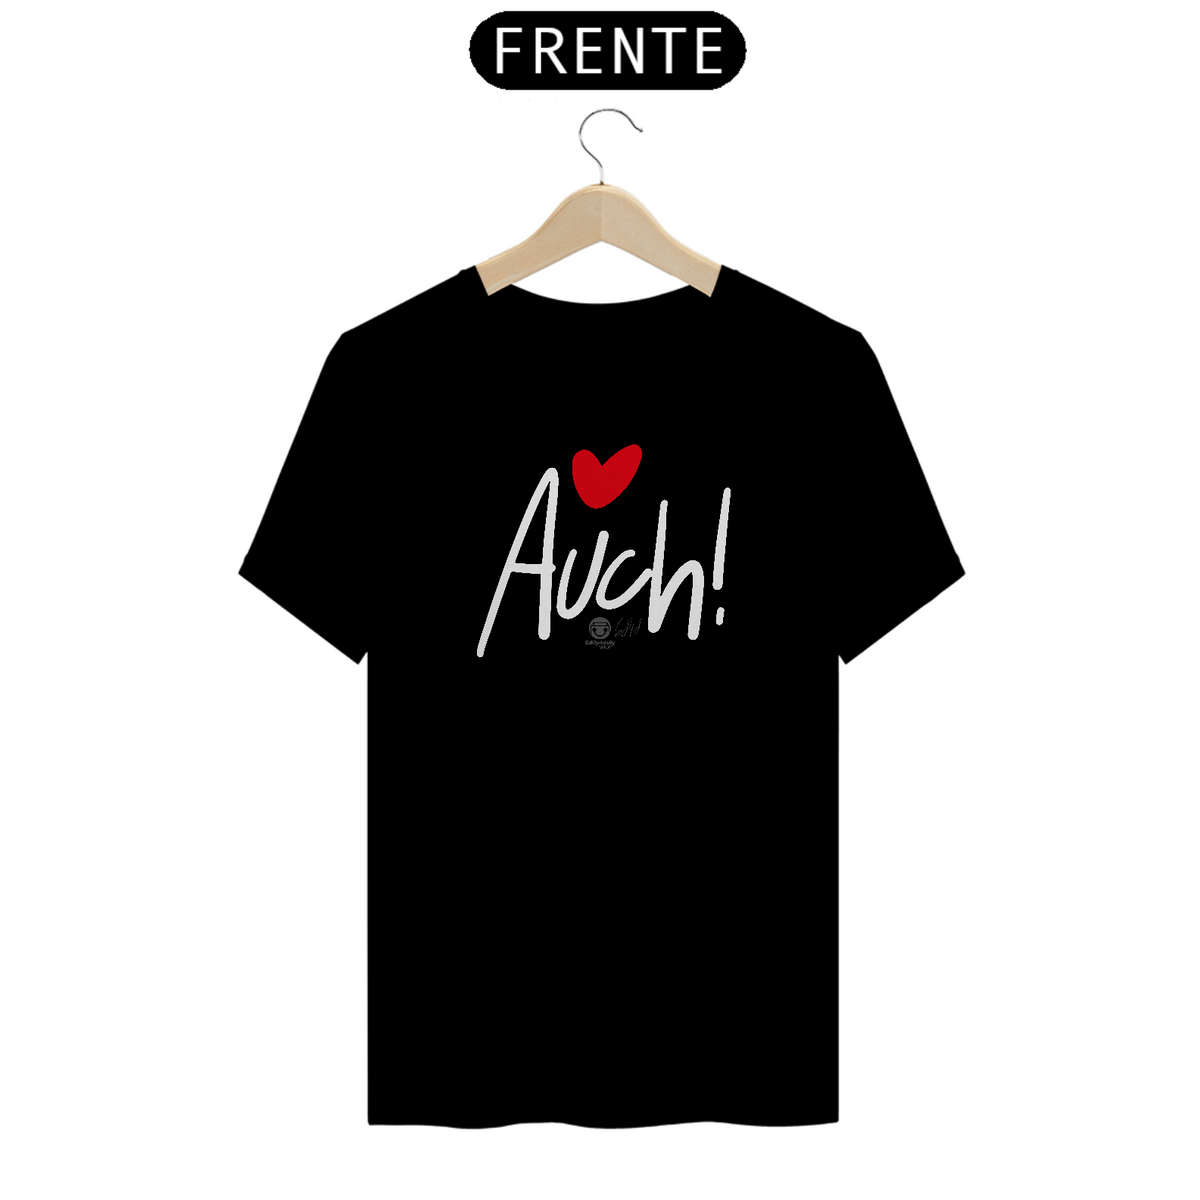 Nome do produto: T shirt Auch! (Estampa Branca)